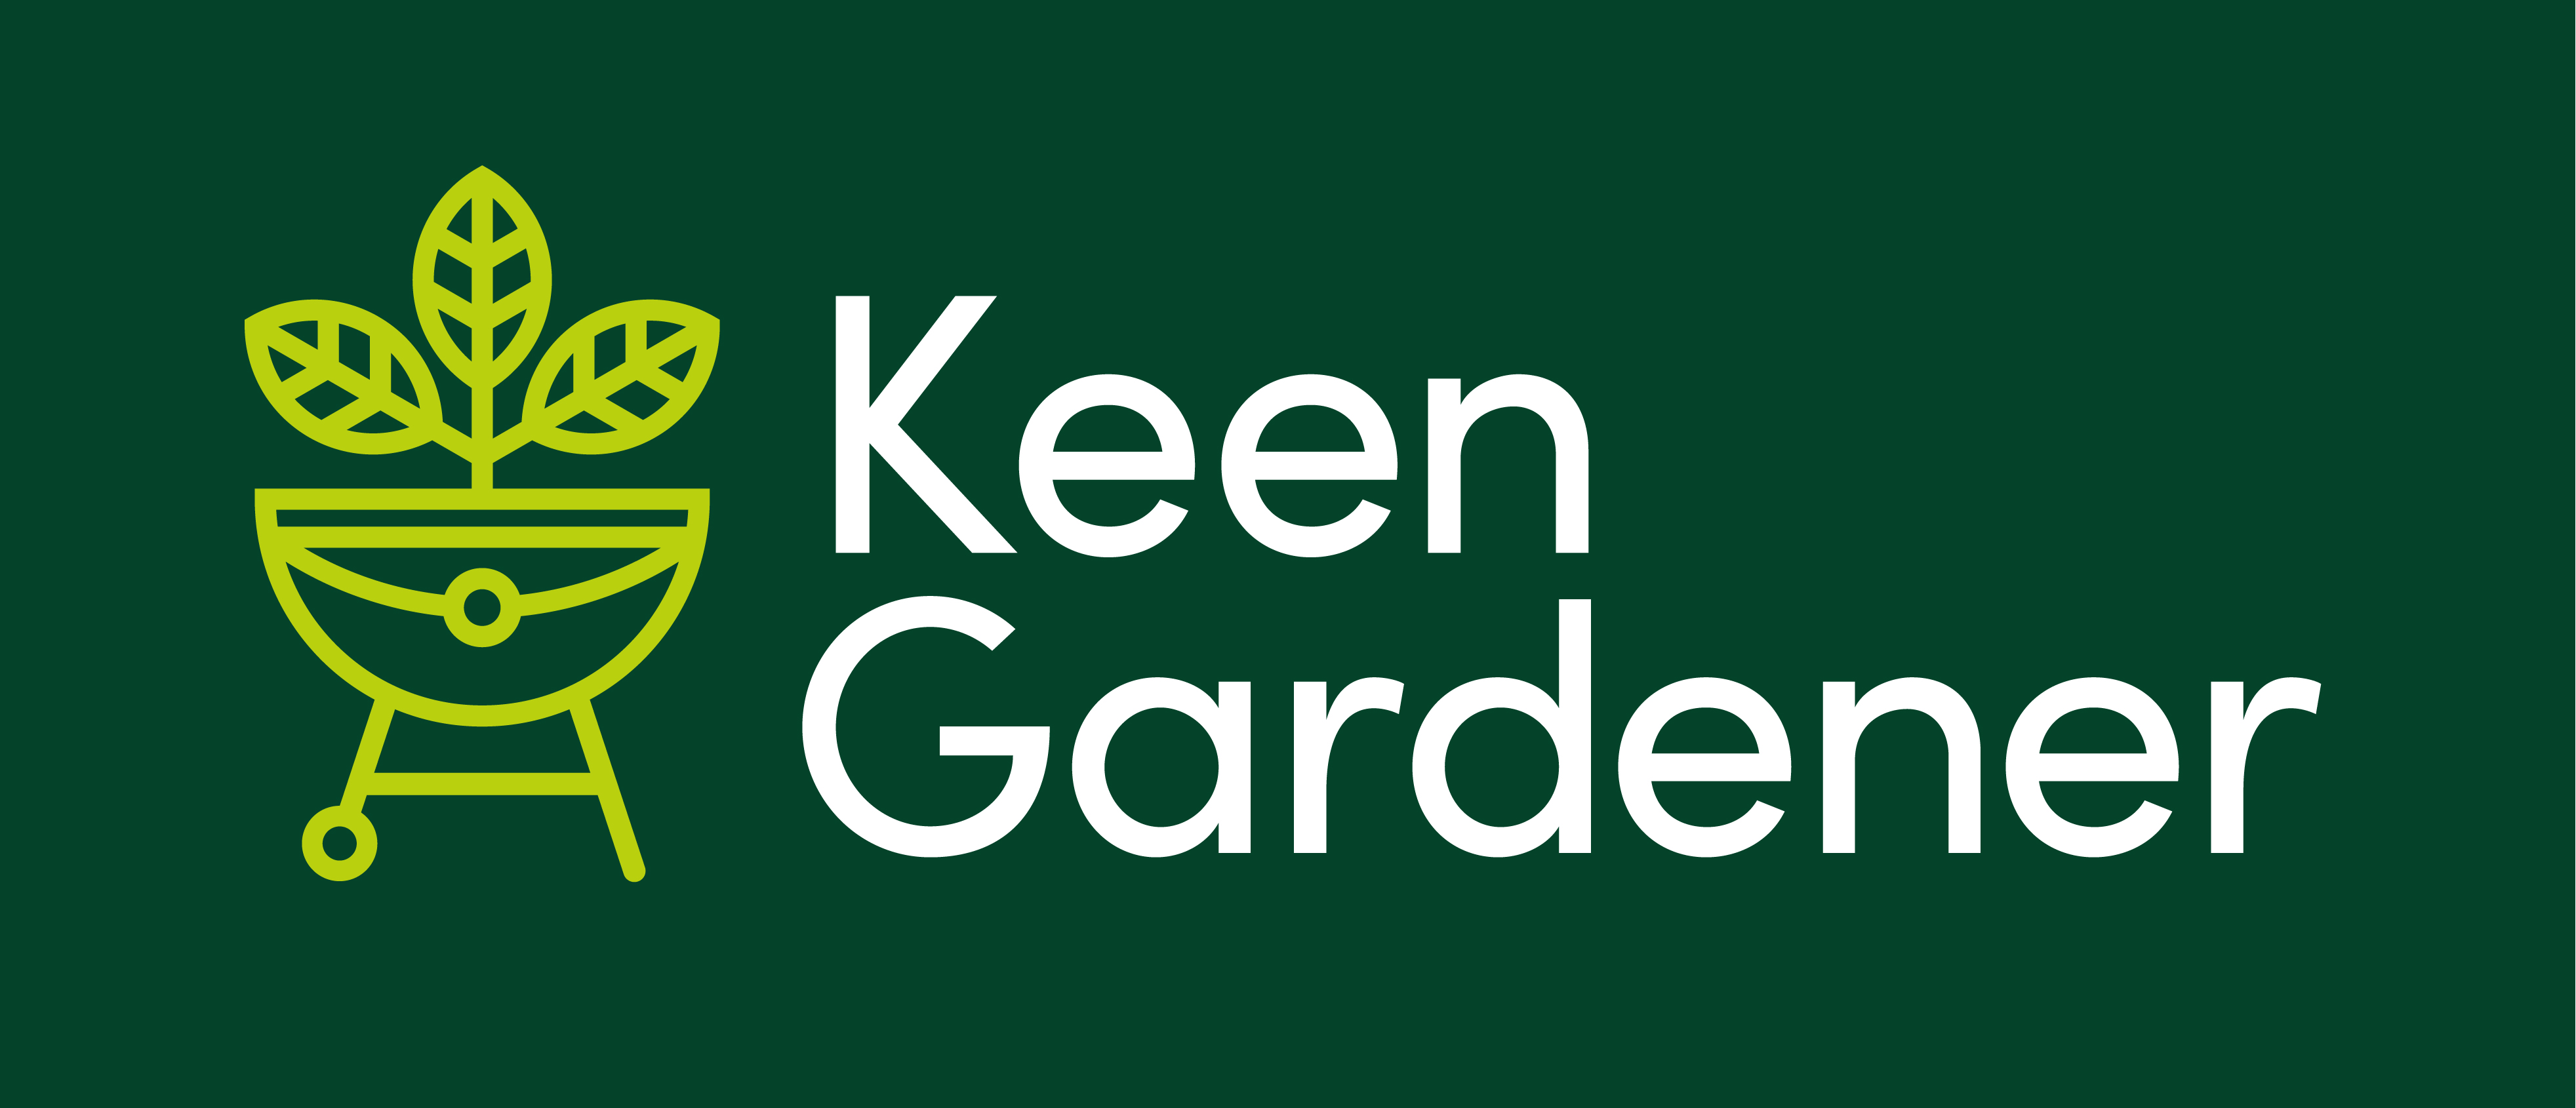 We Take Visa Card - Keen Gardener Online Garden Retailer of Barbecues, Garden Furniture & Garden Equipment